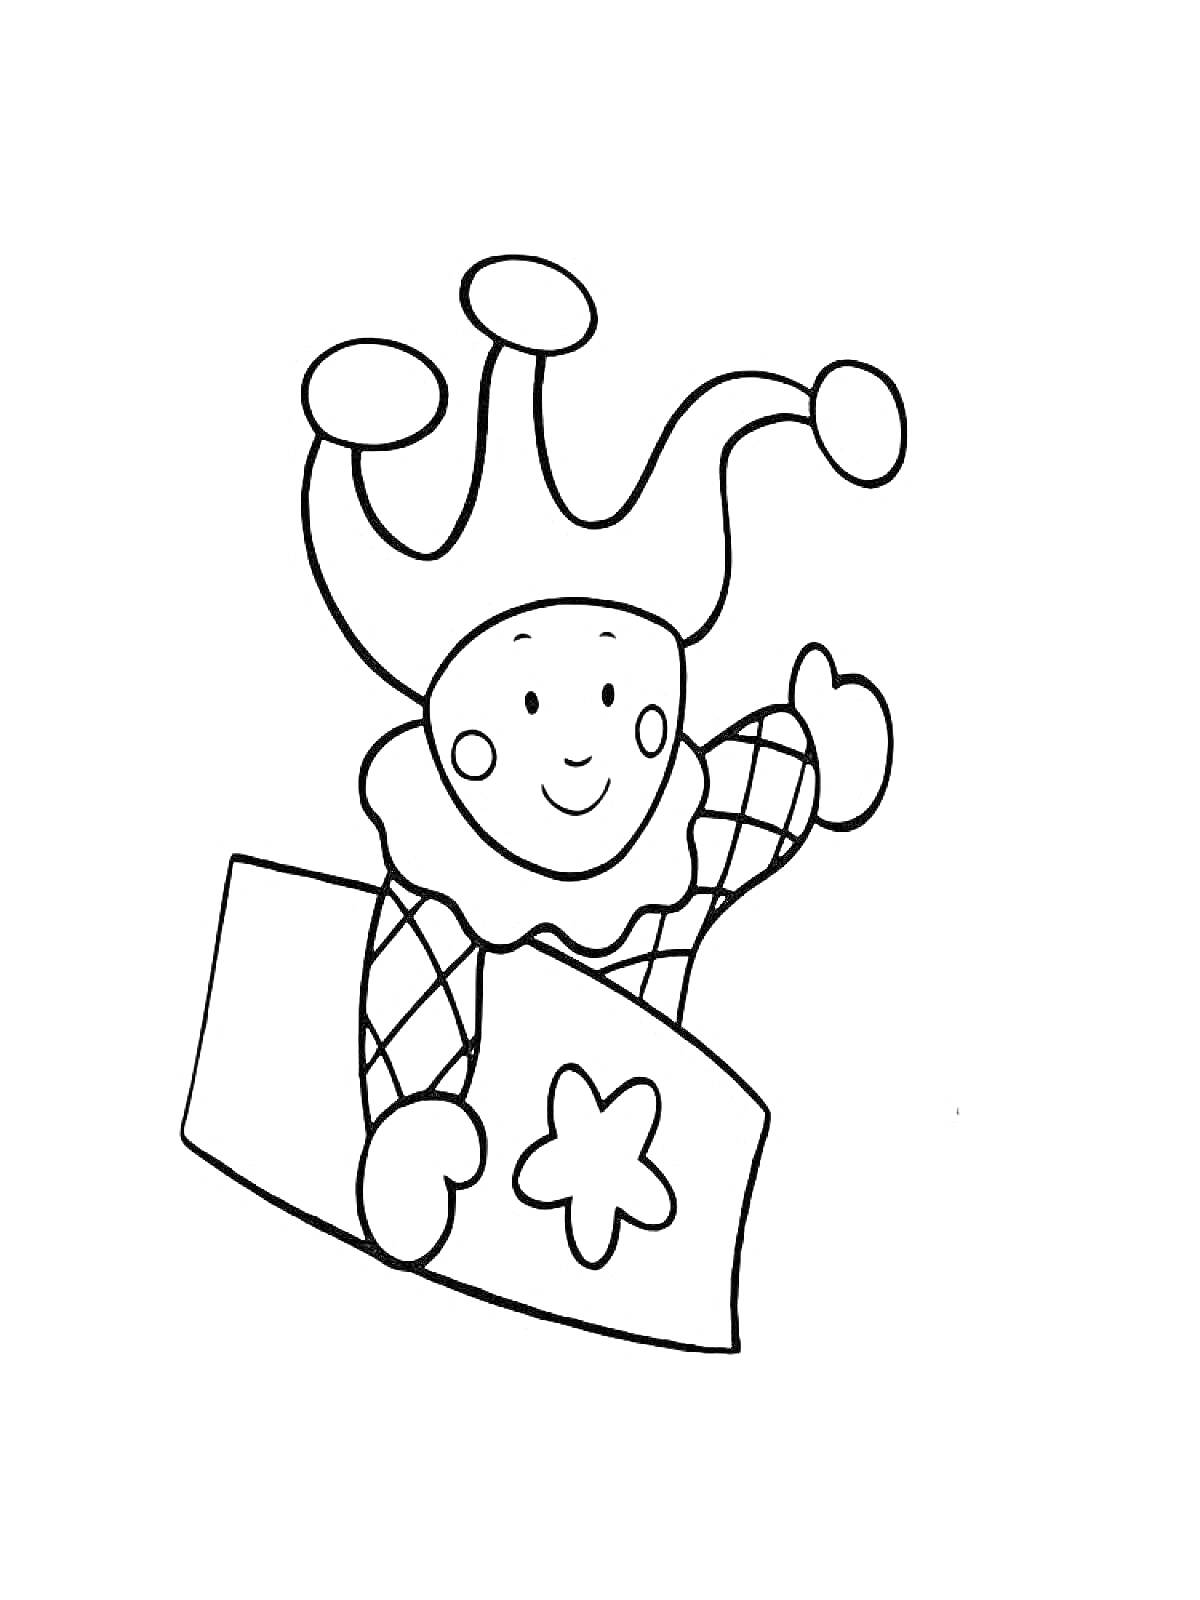 Раскраска Петрушка в шапке с колокольчиками, выглядывающий из коробки с цветком